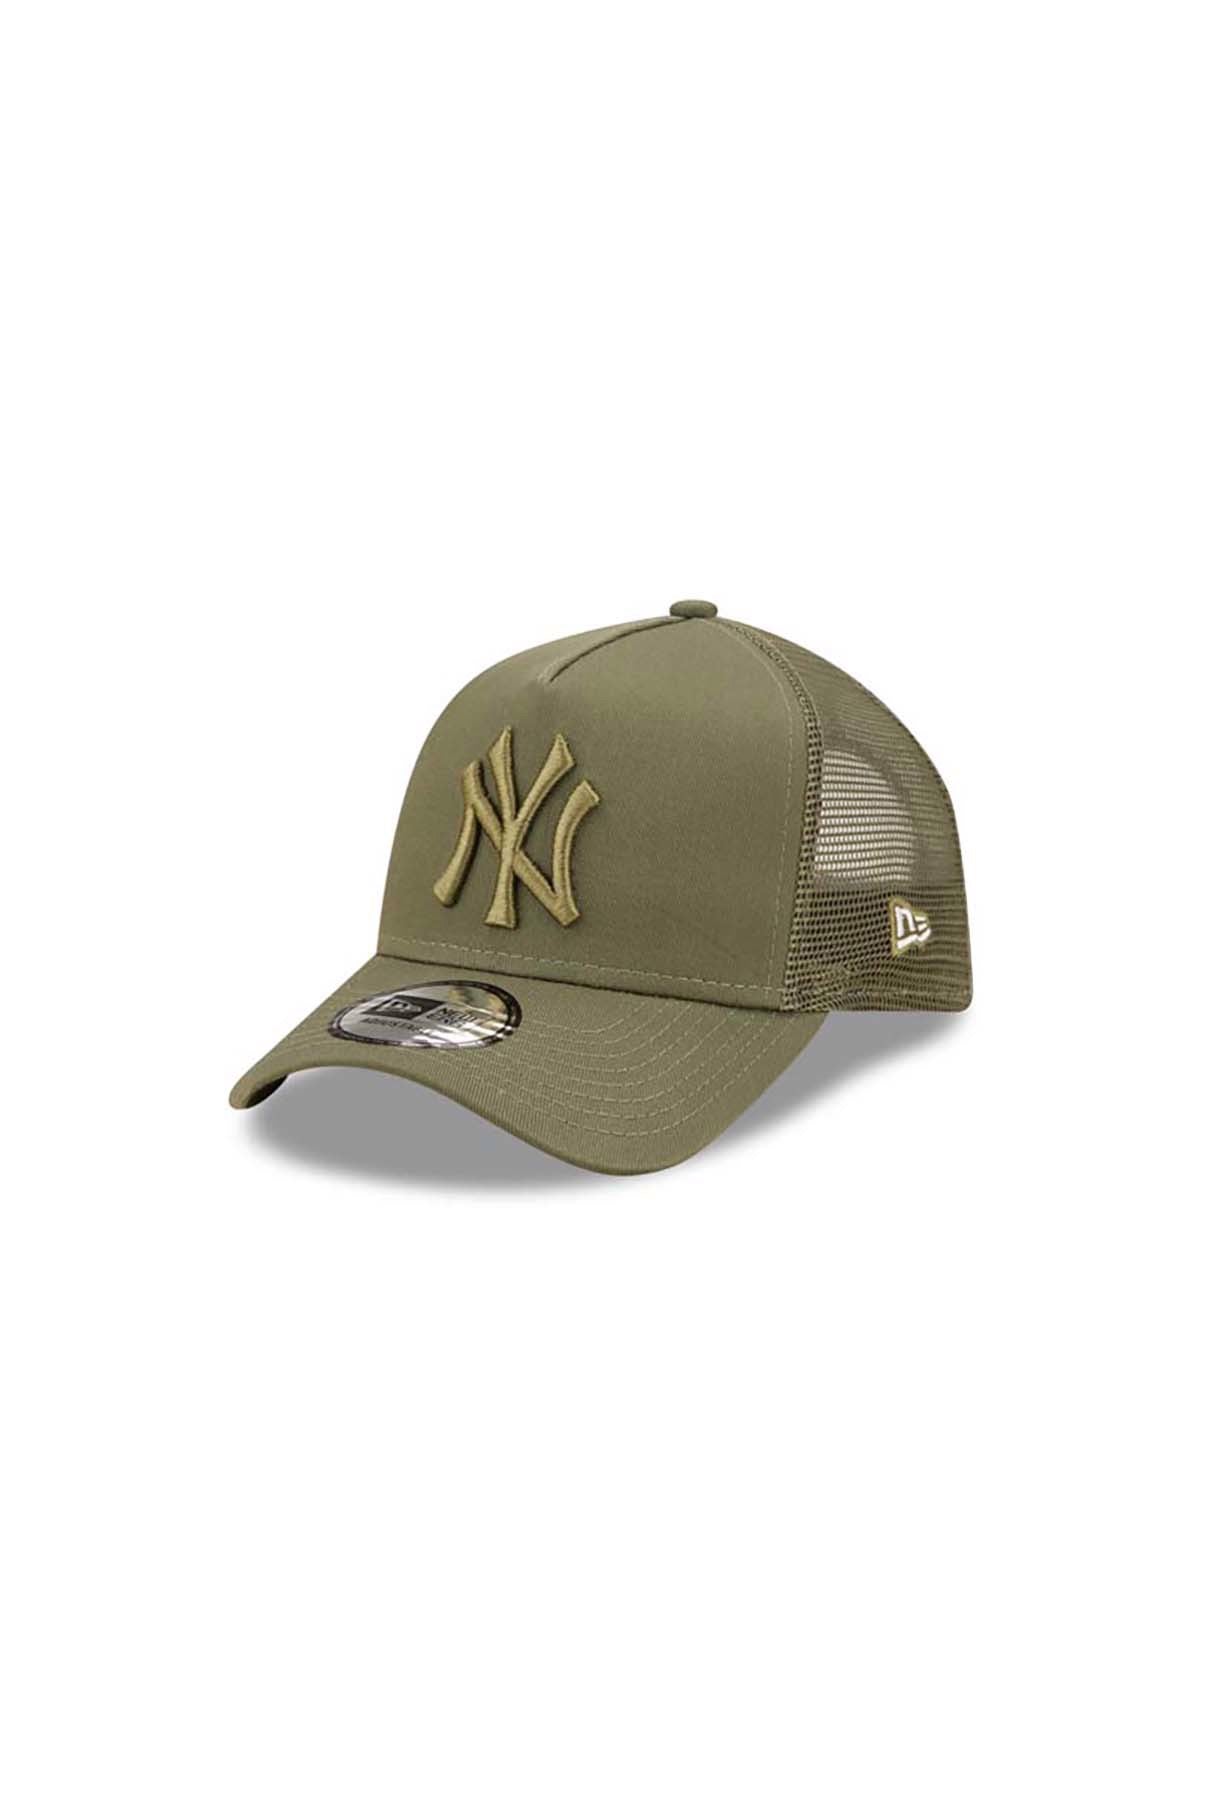 New Era Caps Mesh Trucker New York Yankees